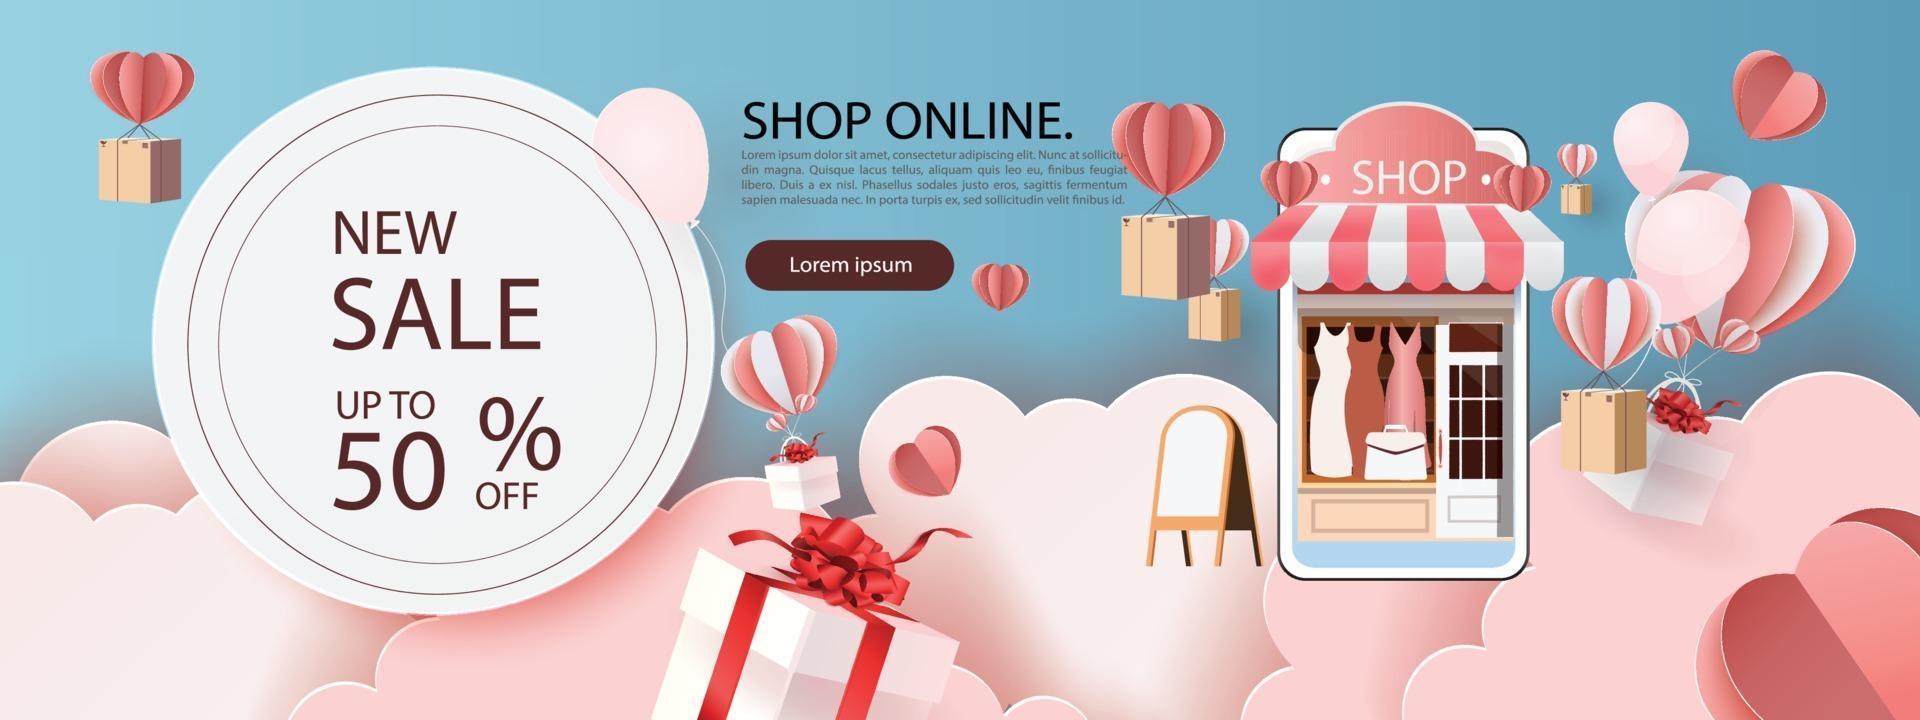 Compras de arte en papel en línea en teléfonos inteligentes y nuevo fondo de promoción de venta de compra para comercio electrónico de banner market. vector